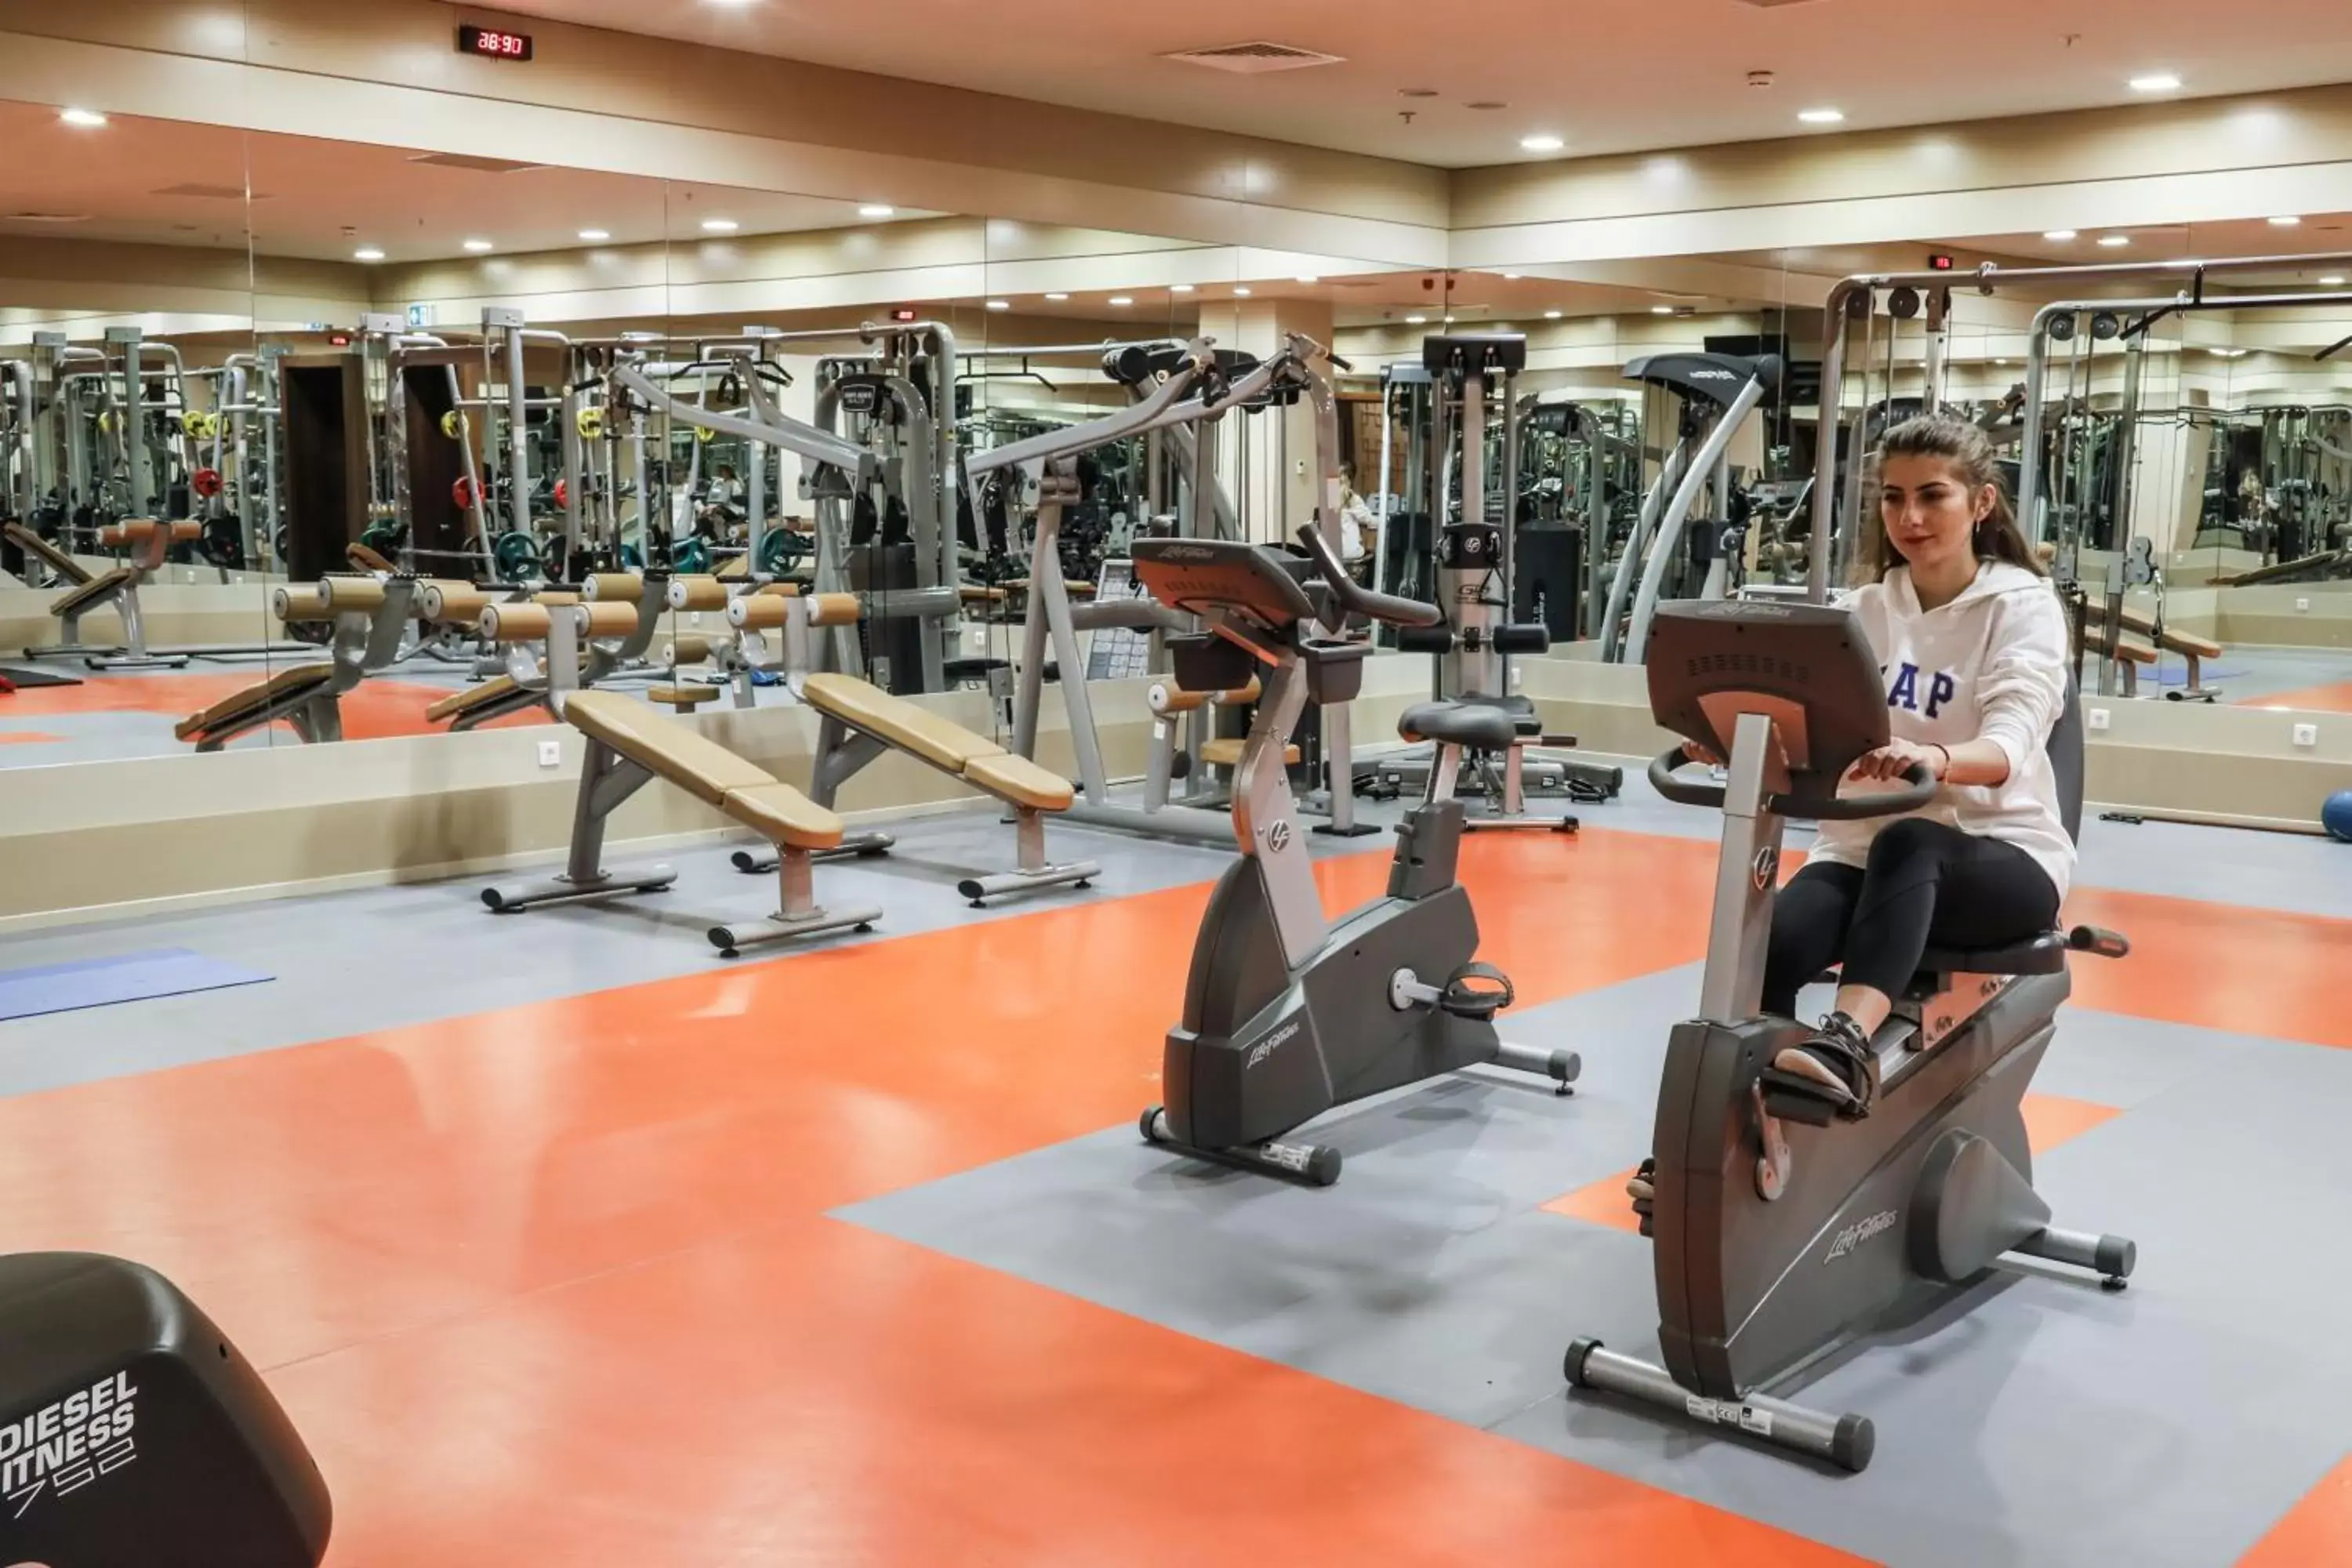 Fitness centre/facilities, Fitness Center/Facilities in ISG Sabiha Gökçen Airport Hotel